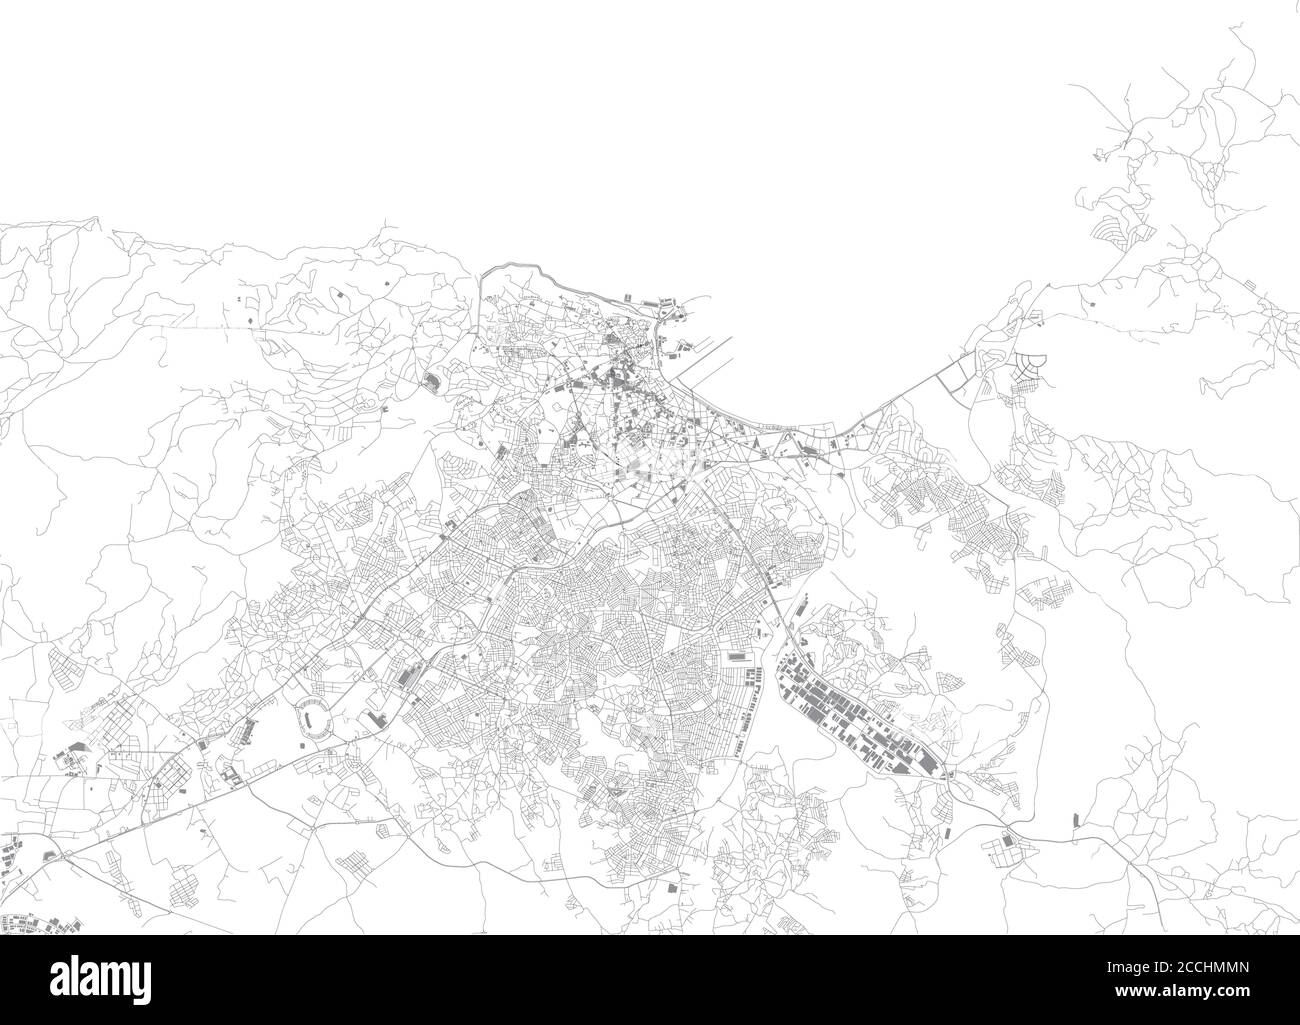 Plan de Tanger, vue satellite, ville, Maroc. Rue et bâtiment Illustration de Vecteur